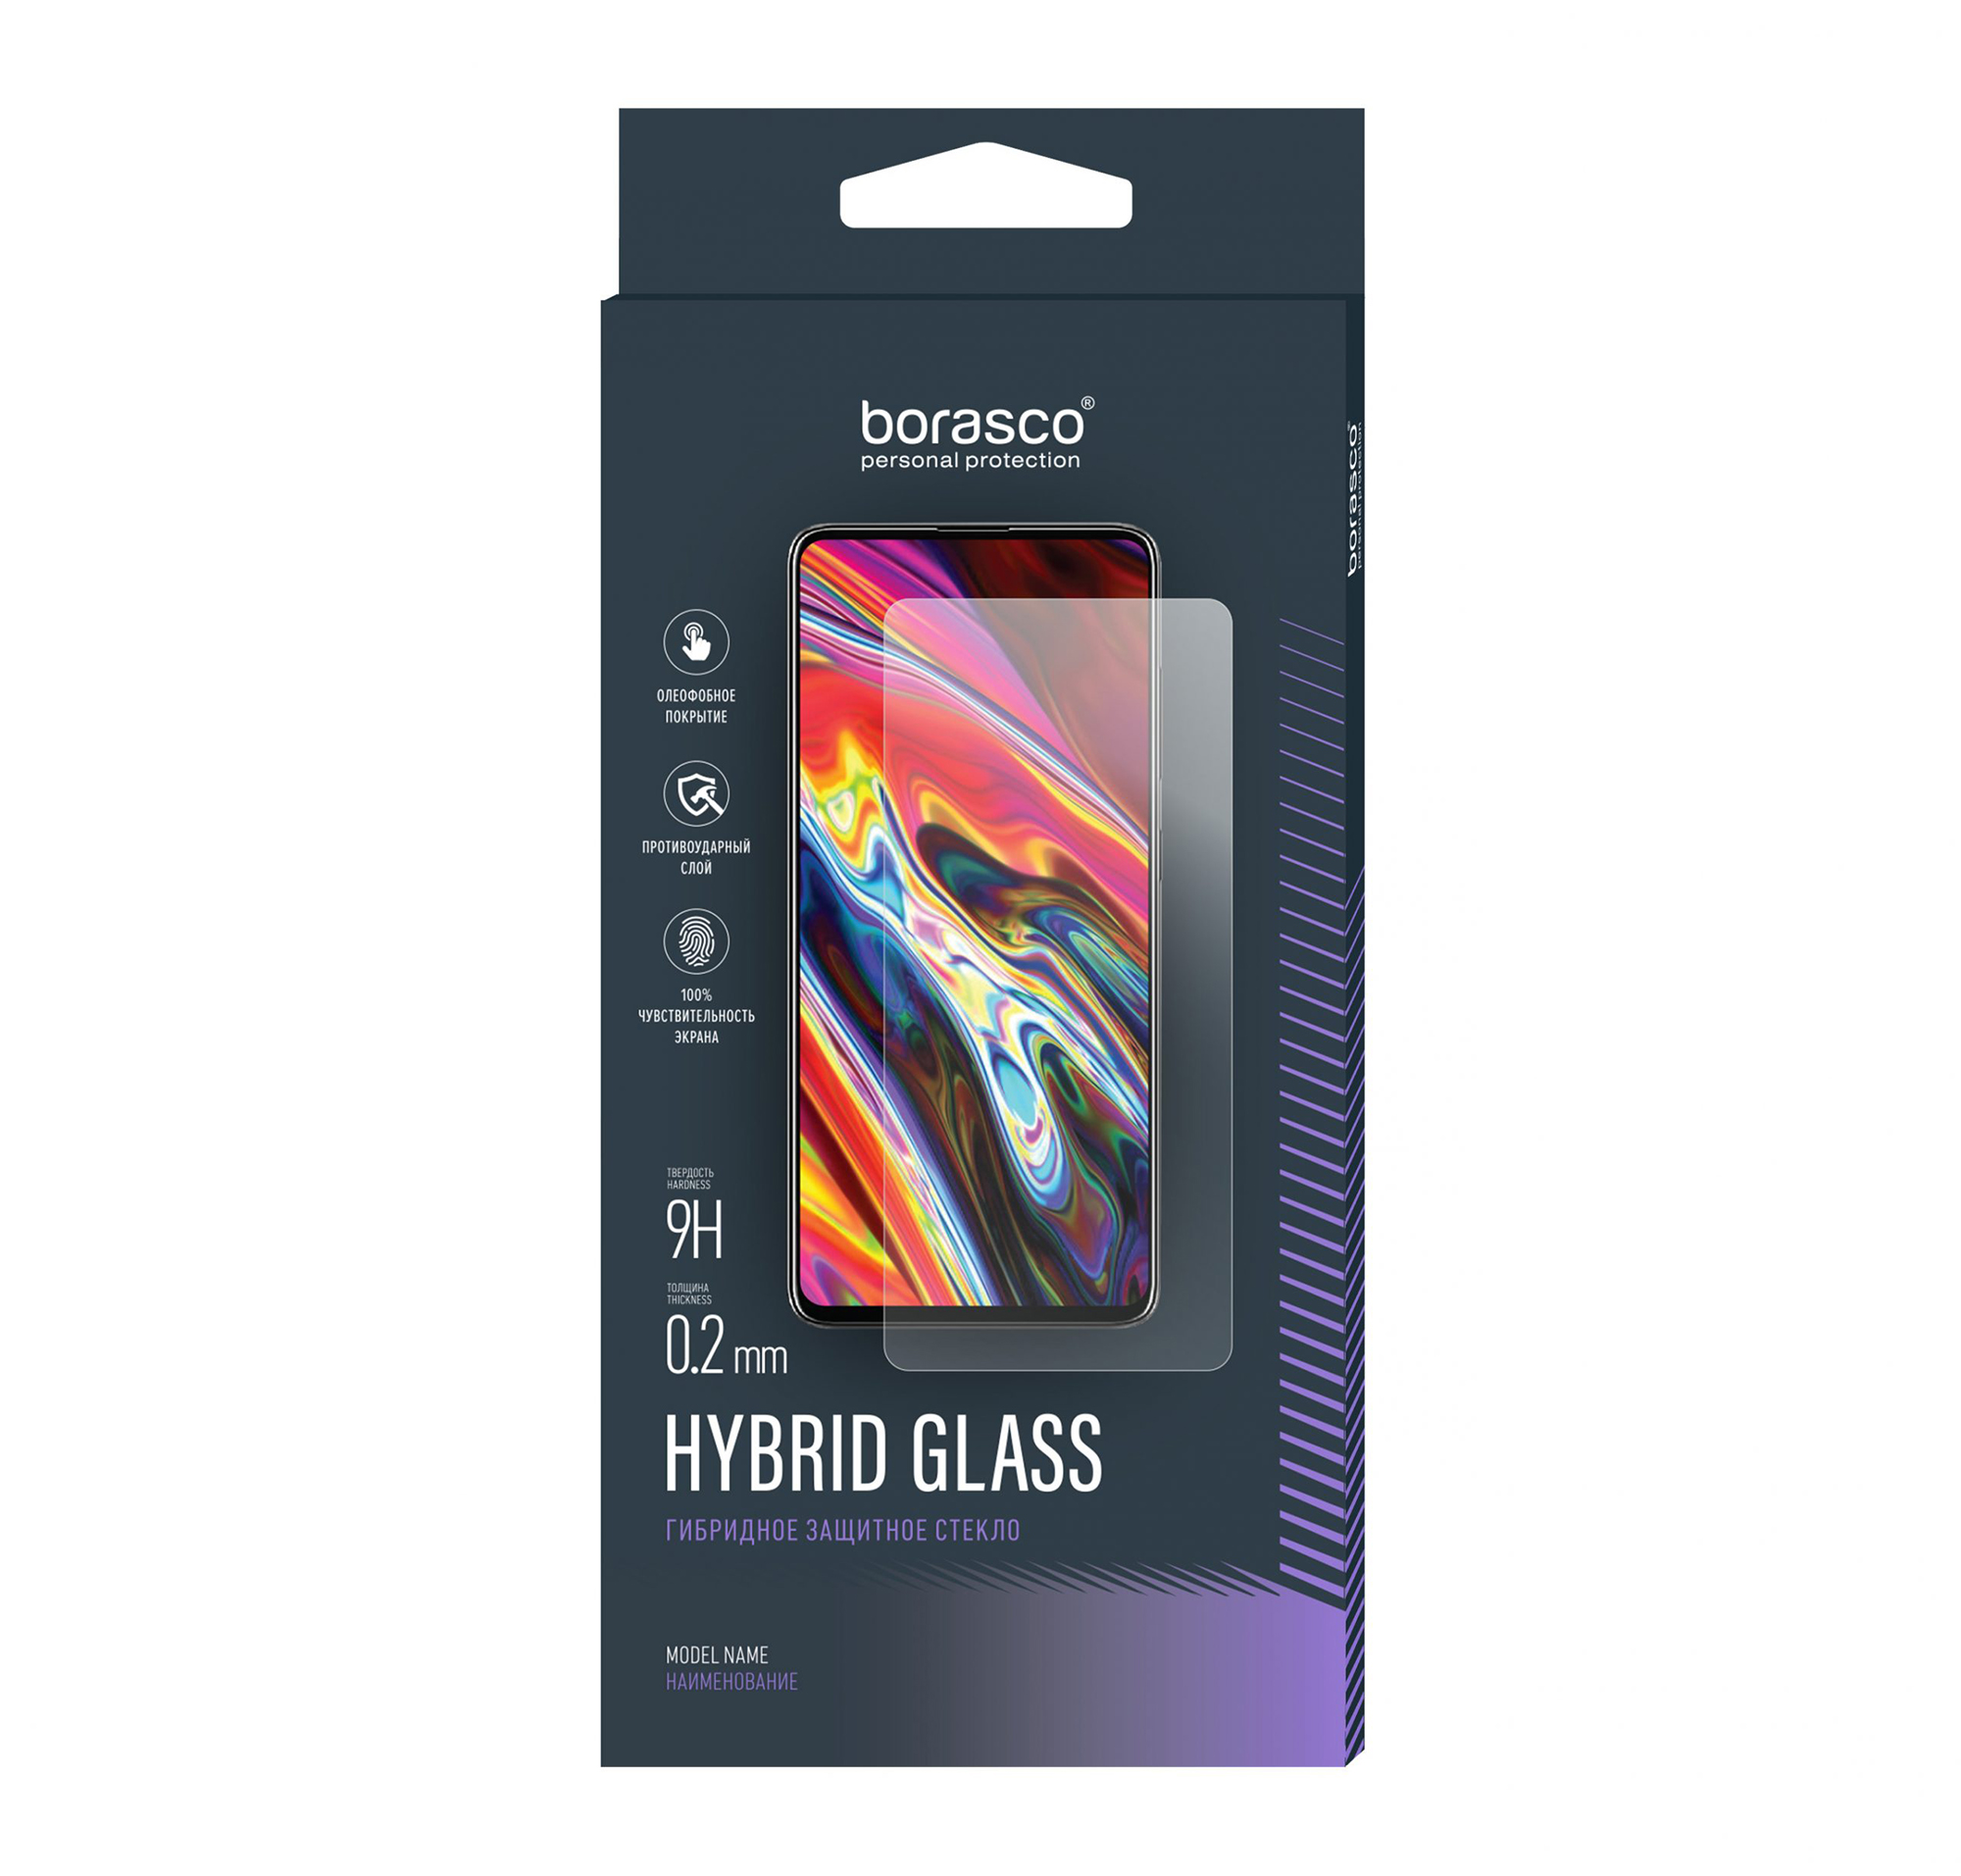 Защитное стекло Hybrid Glass для Asus ZenFone 2 (ZE500KL) защитное стекло на asus a600cg zenfone 6